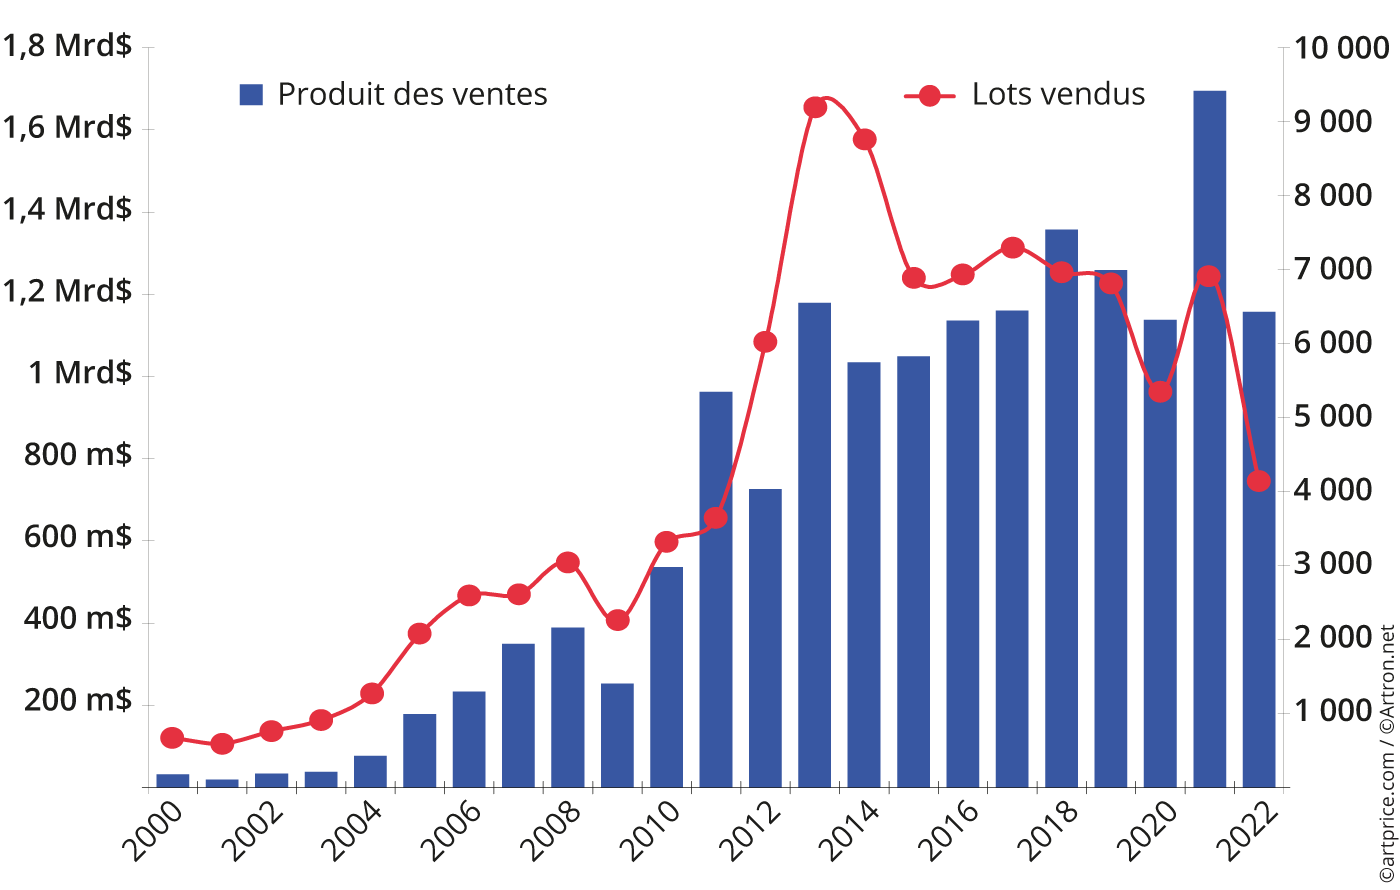 Évolution annuelle du produit des ventes aux enchères et du nombre de lots vendus de Fine Art et NFT à Hong Kong (2008-2022)